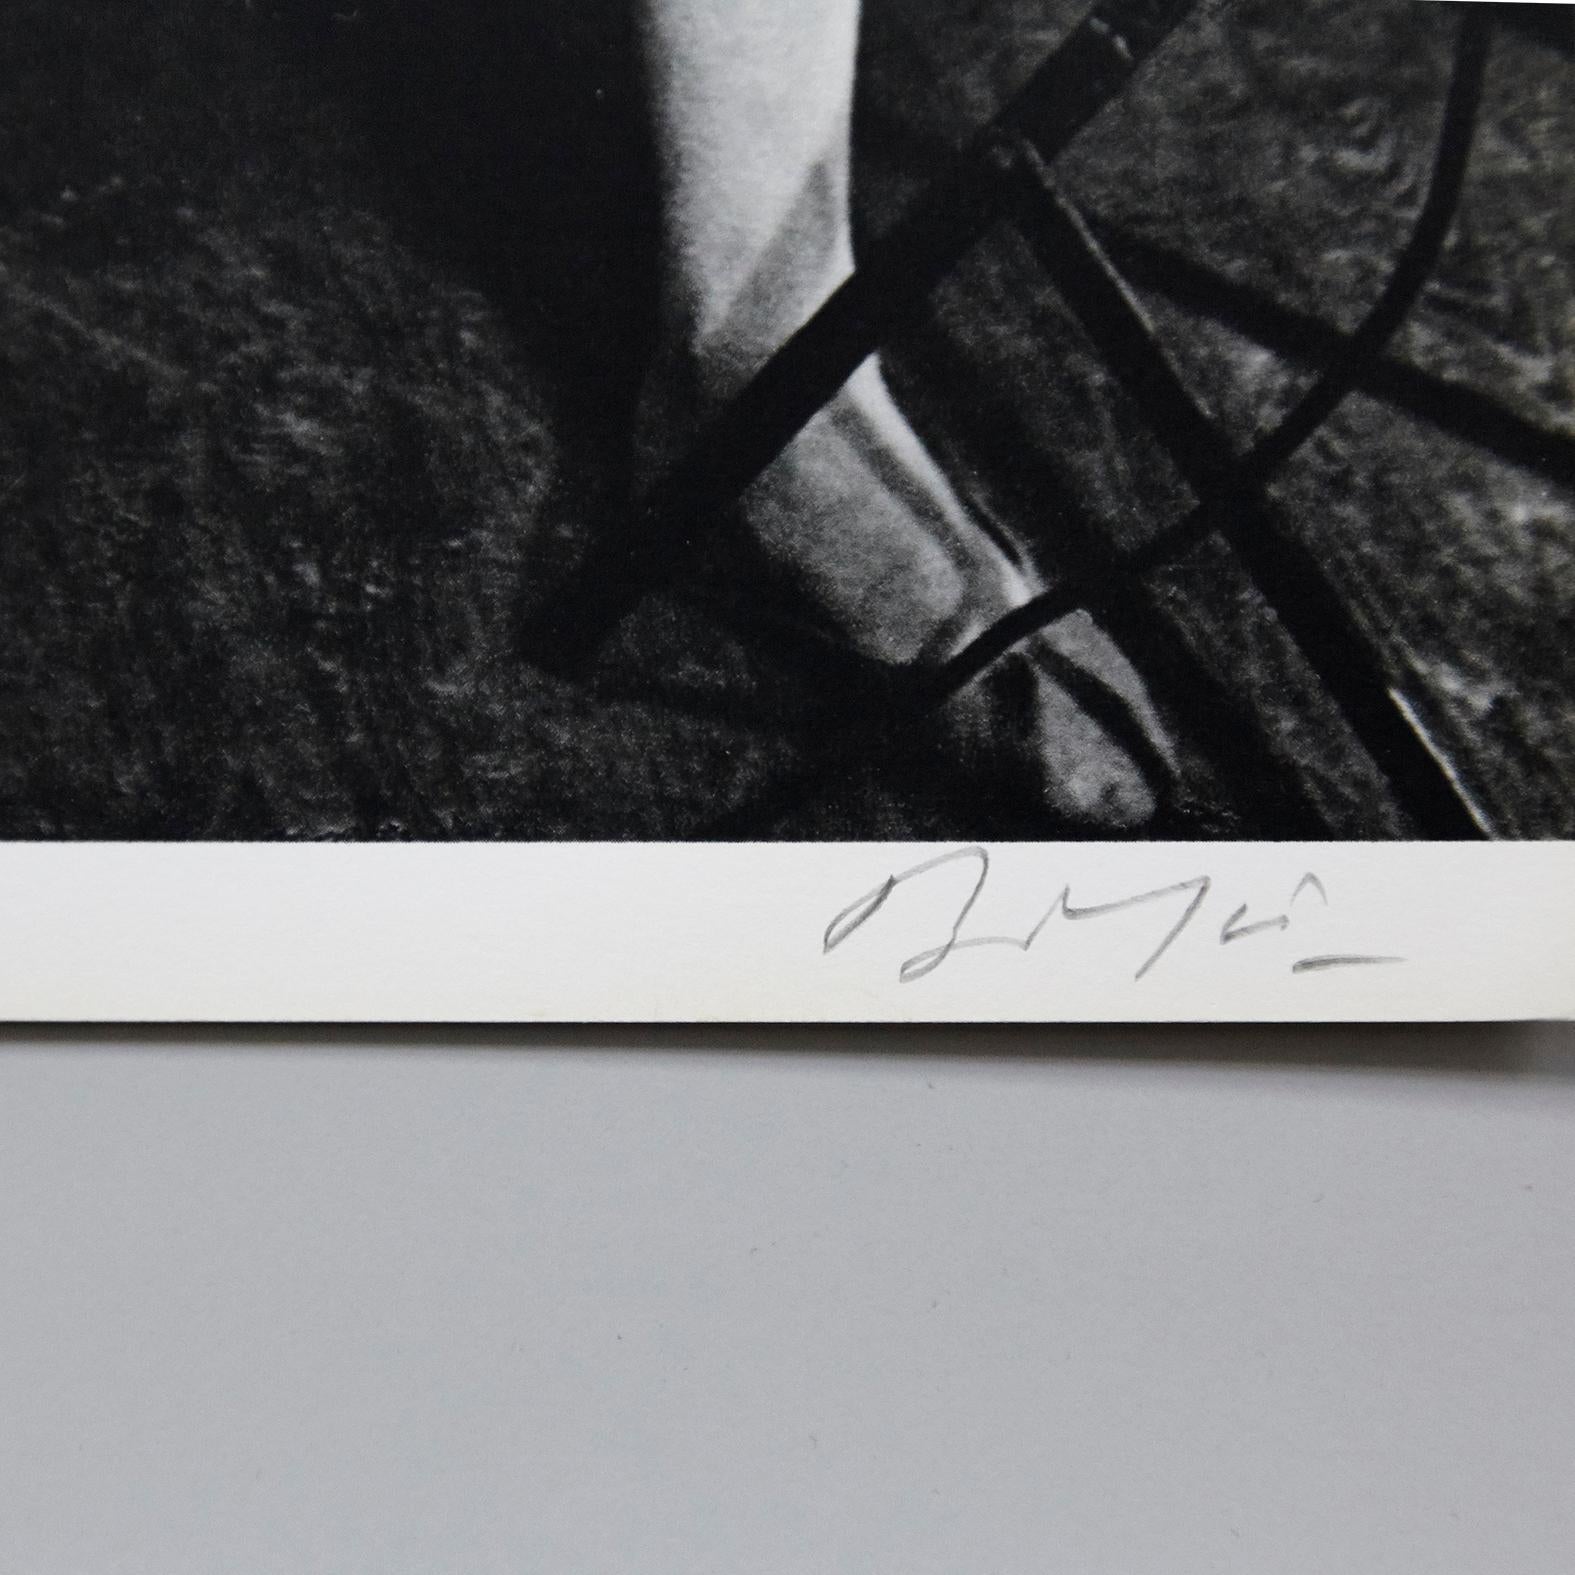 Signierte Fotolithografie von Brassaï, 1979.

Gestempelte Rotationstiefdruck-Reproduktion einer Serie von Bolaffiarte. Limitierte Auflage von 5000 Stück.

Beispielhafte Nummer 2372.

Brassaï Pseudonym von Gyula Halász; 9. September 1899 - 8.